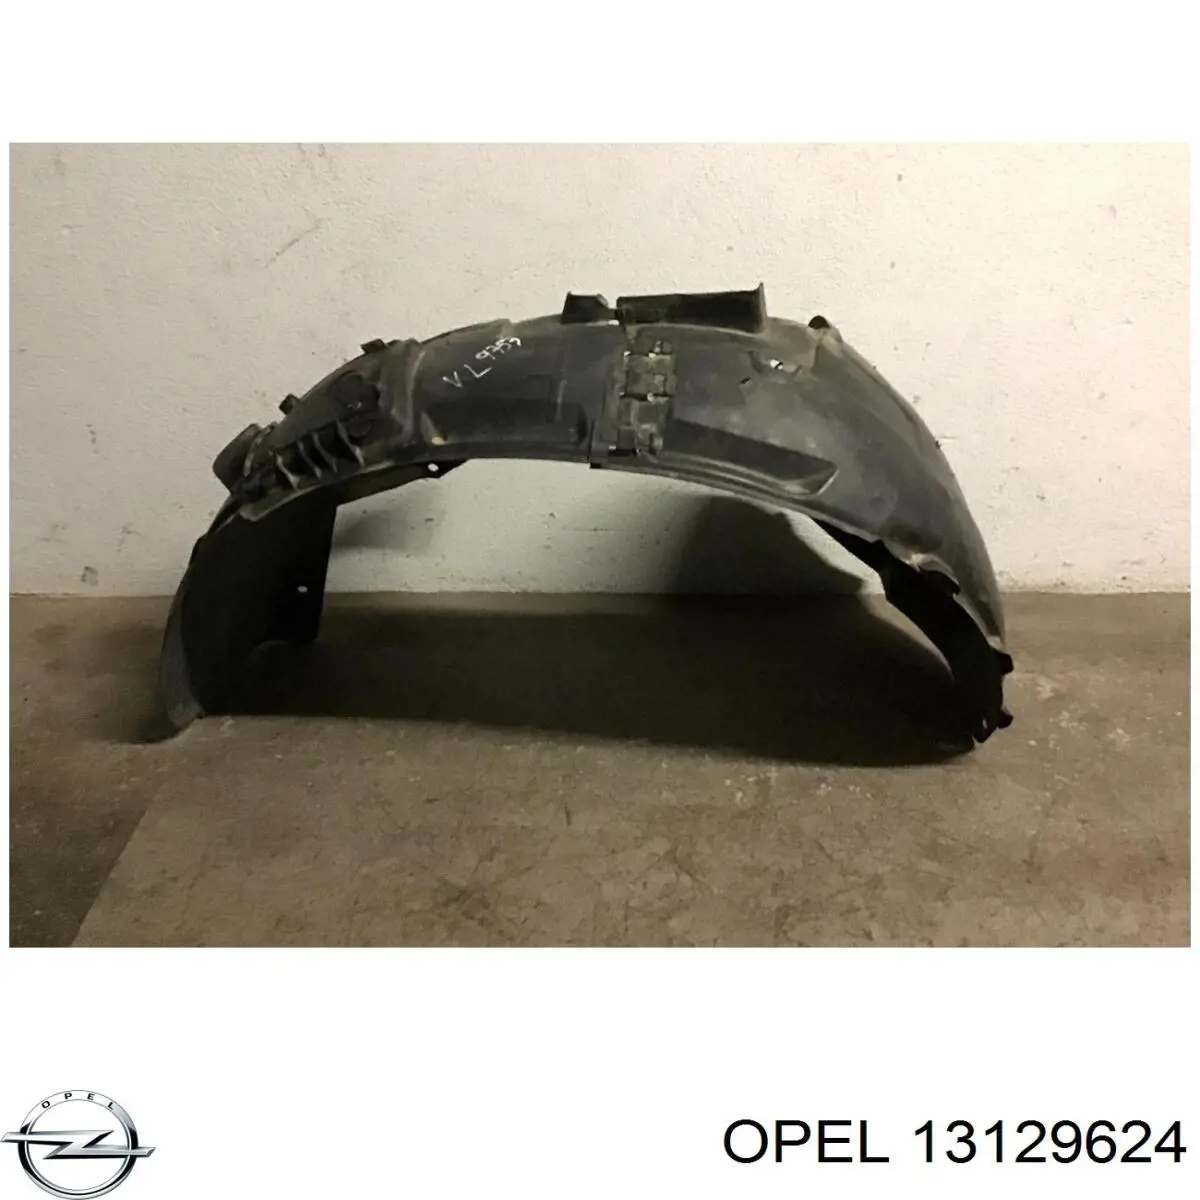 13129624 Opel guardabarros interior, aleta delantera, izquierdo trasero